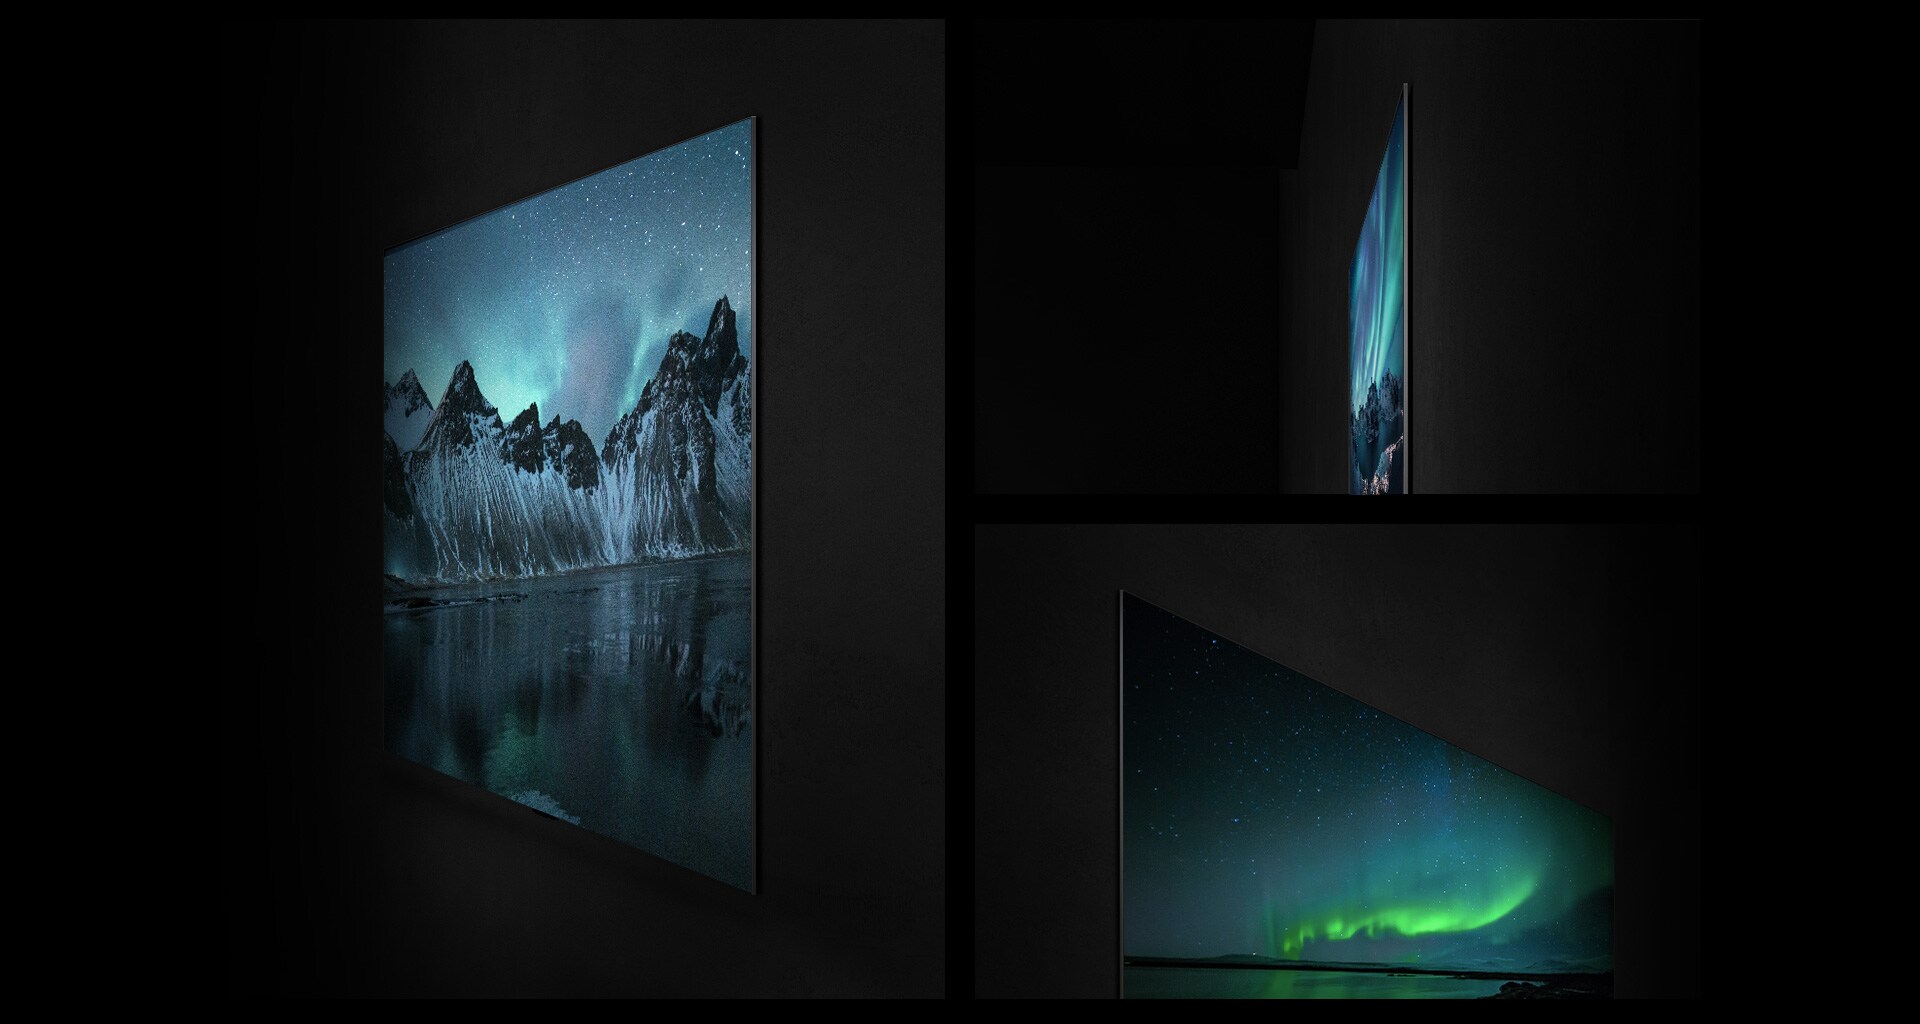 Απεικονίζεται μια επίτοιχη τηλεόραση LG OLED από διάφορες γωνίες, ενώ δίνεται έμφαση στο Gallery Design και στο επίπεδο πίσω μέρος